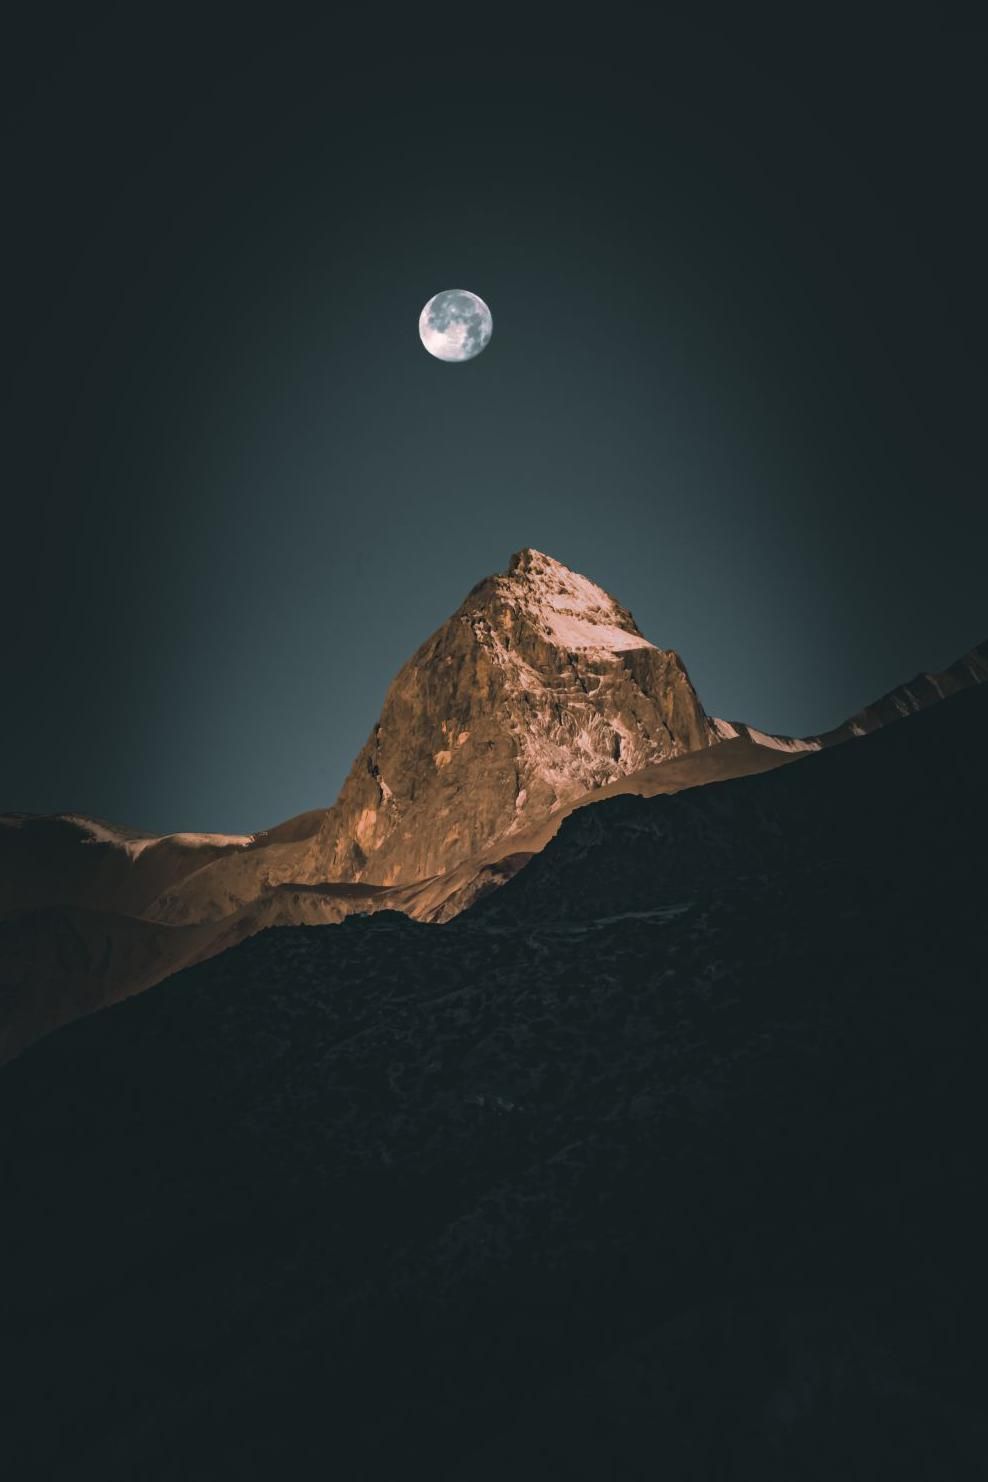 The moon over a mountain